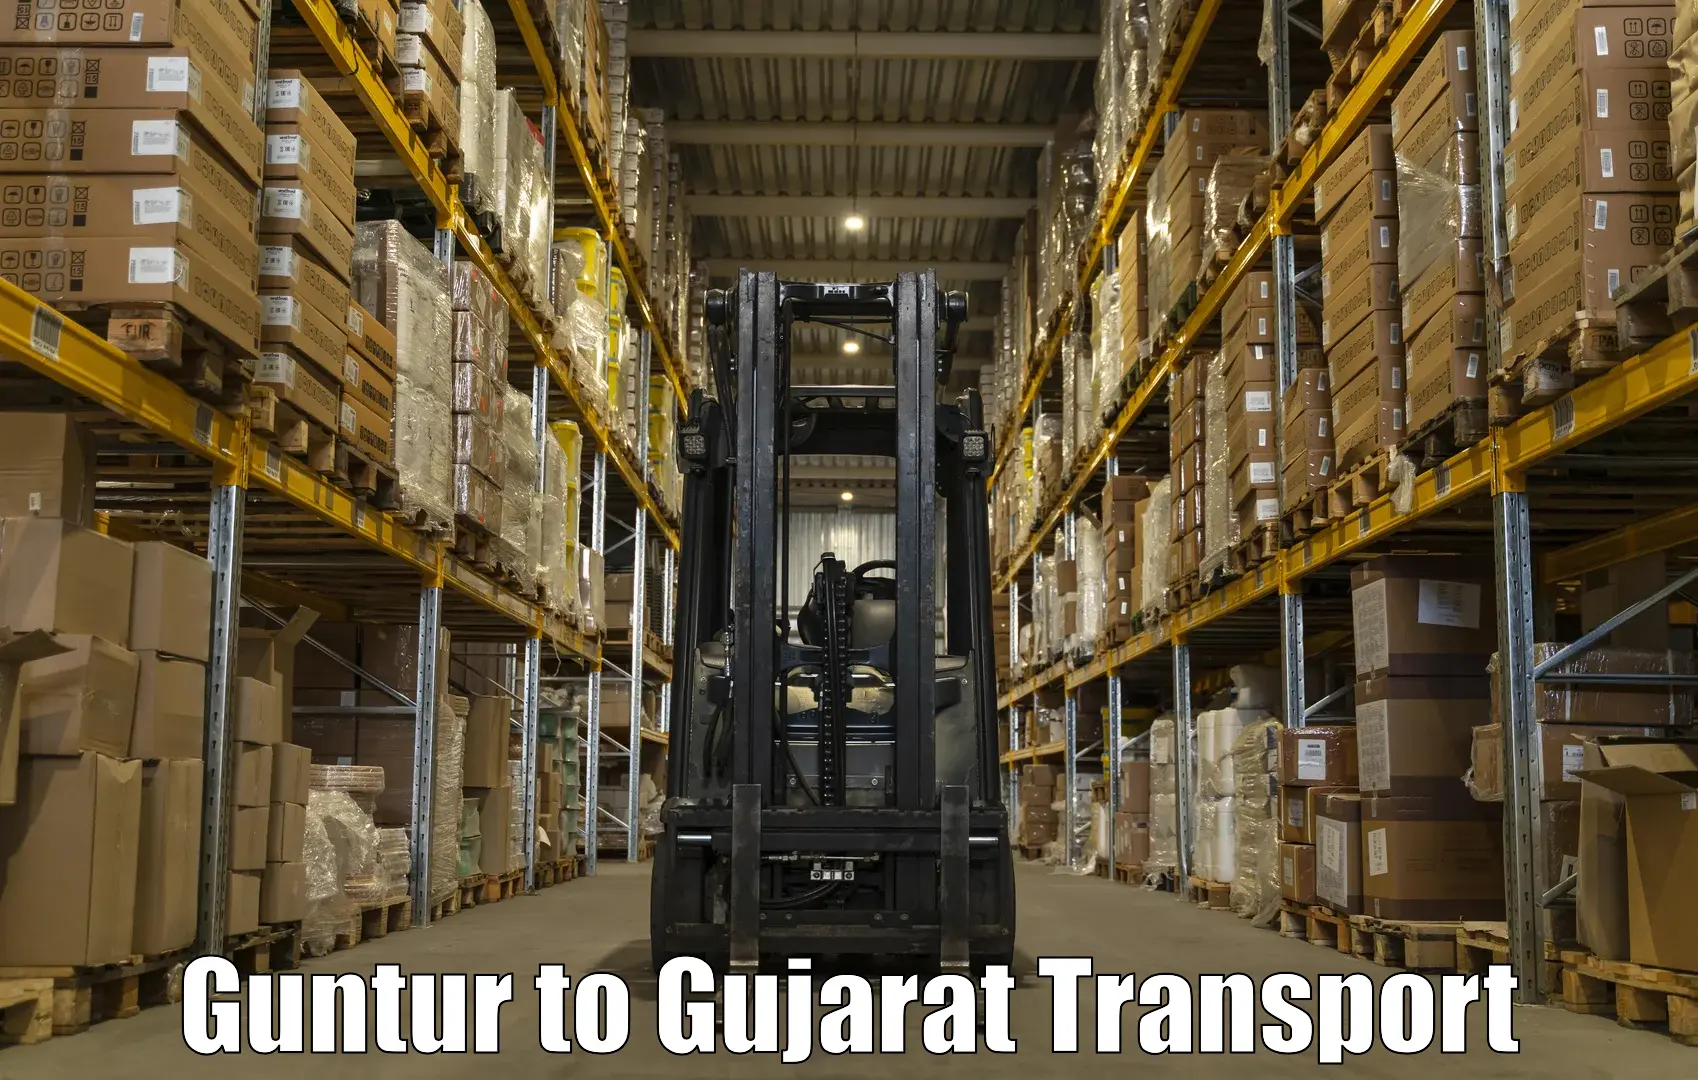 Transport in sharing Guntur to Vijapur